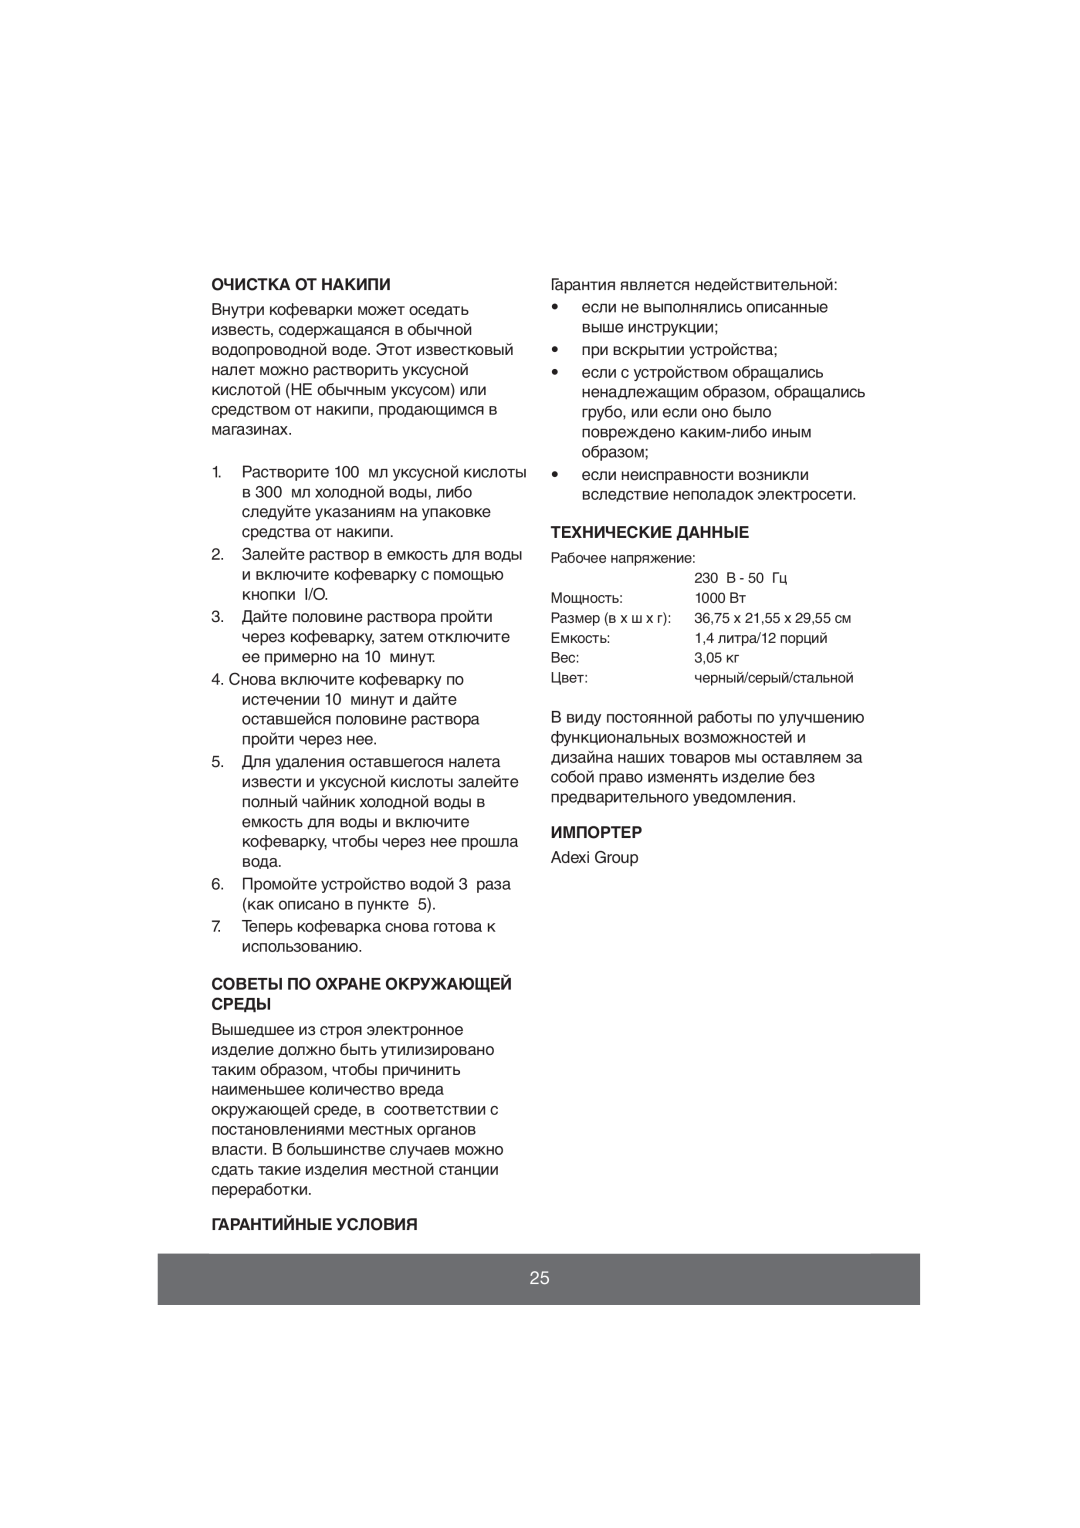 Butler 645-061 manual Очистка От Накипи, Советы По Охране Окружающей Среды, Гарантийные Условия, Импортер 